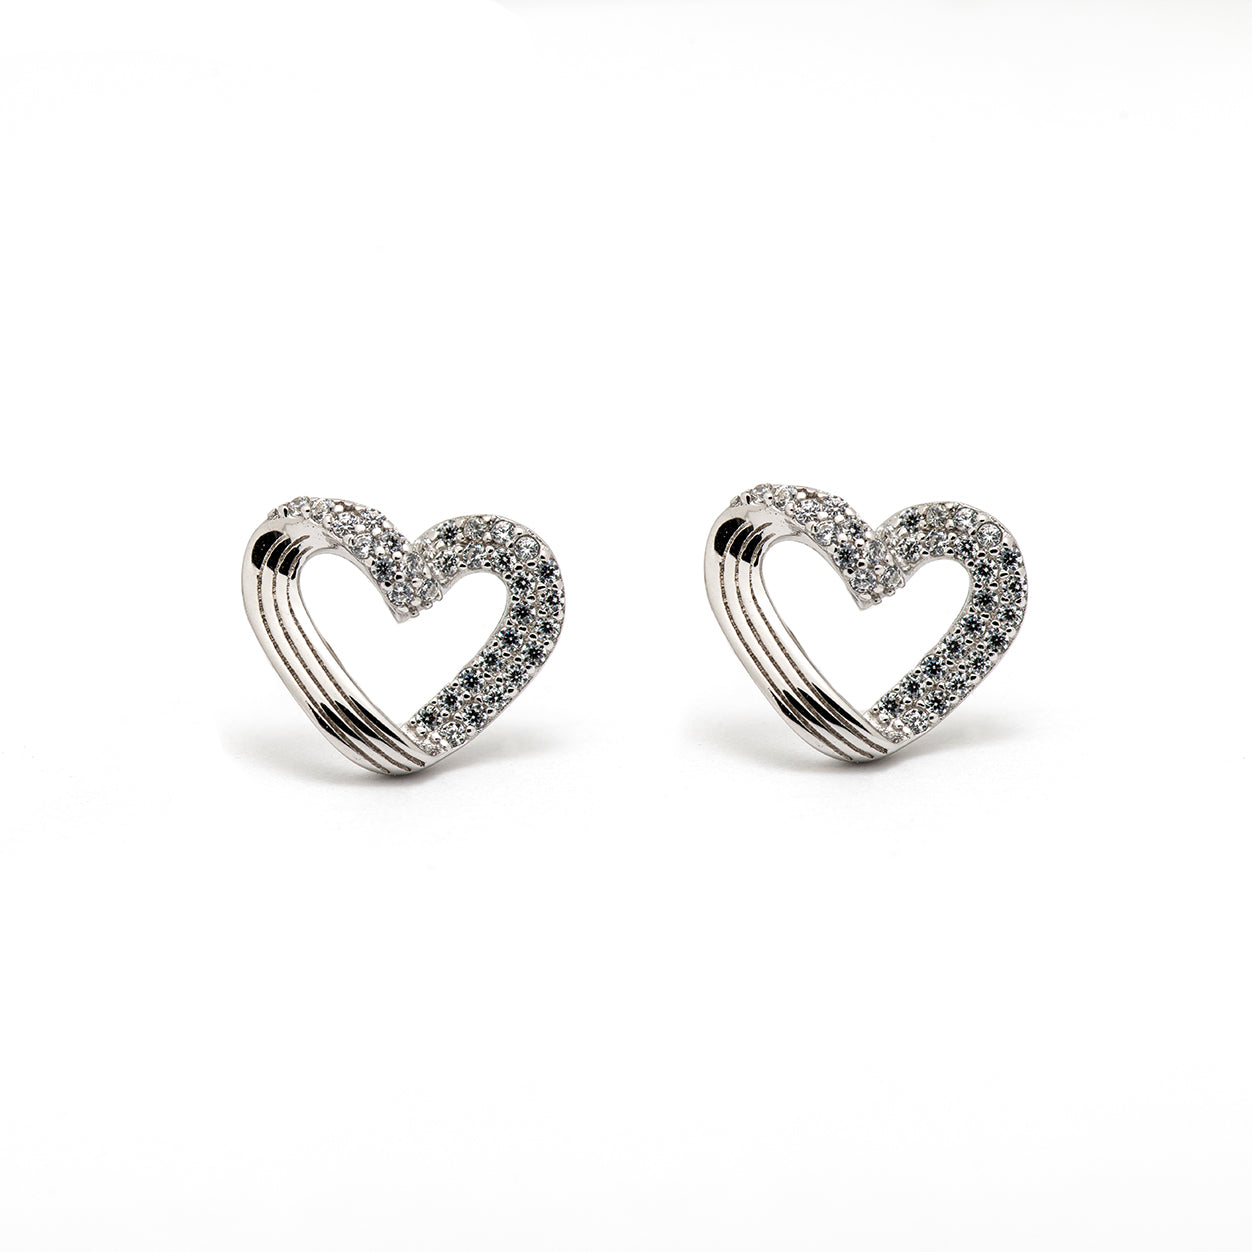 DK-925-118 heart earrings